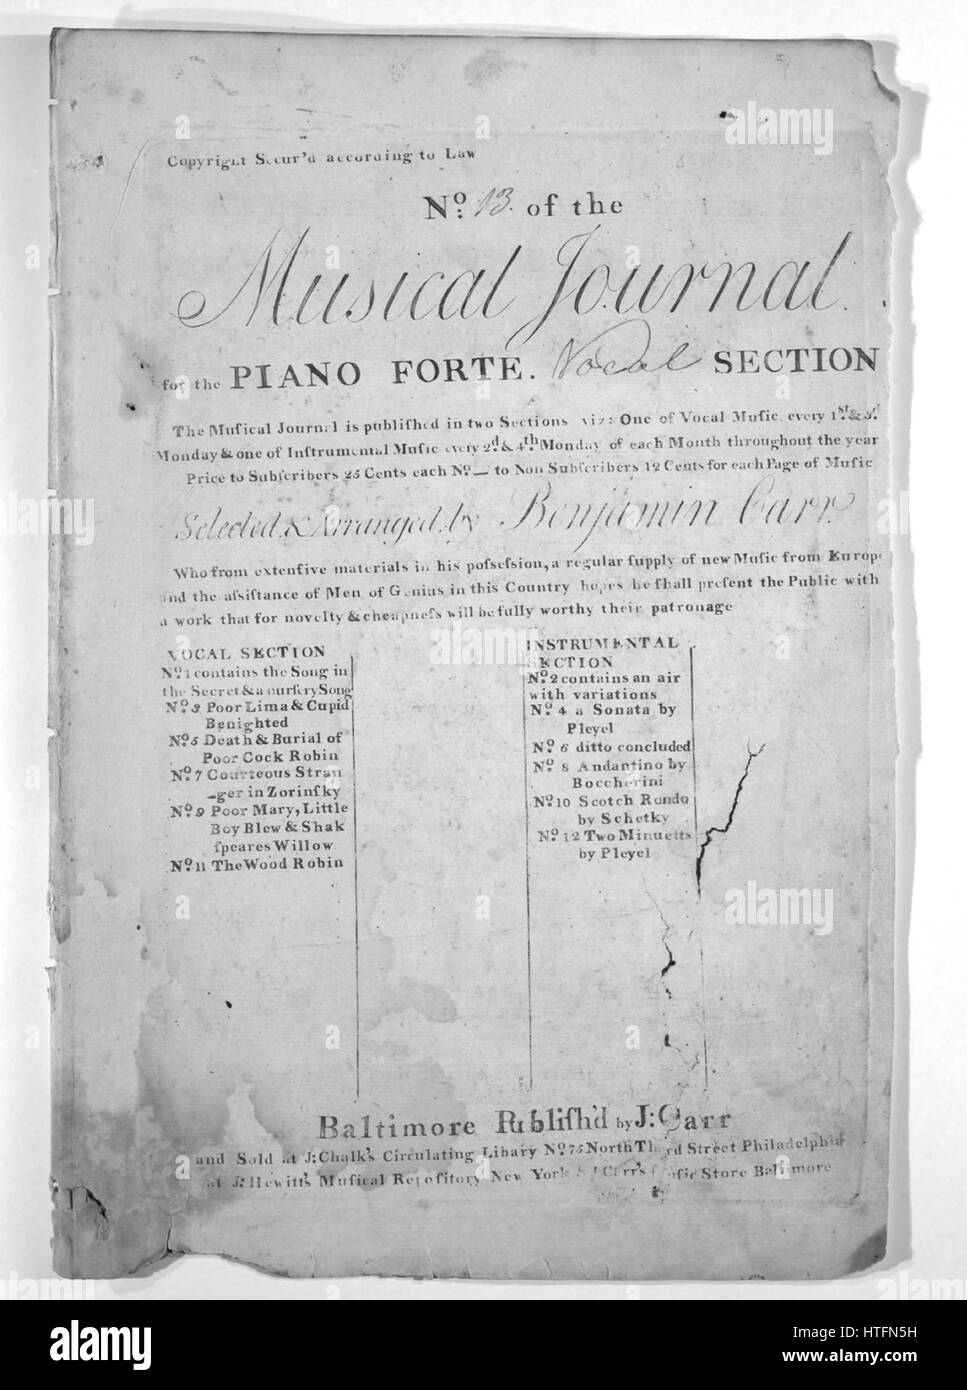 Imagen de cubierta de partituras de la canción "Dos Original ruso Airs  adaptado a palabras en inglés Título de la serie n° 13 de la revista  musical para el Piano Forte Sección